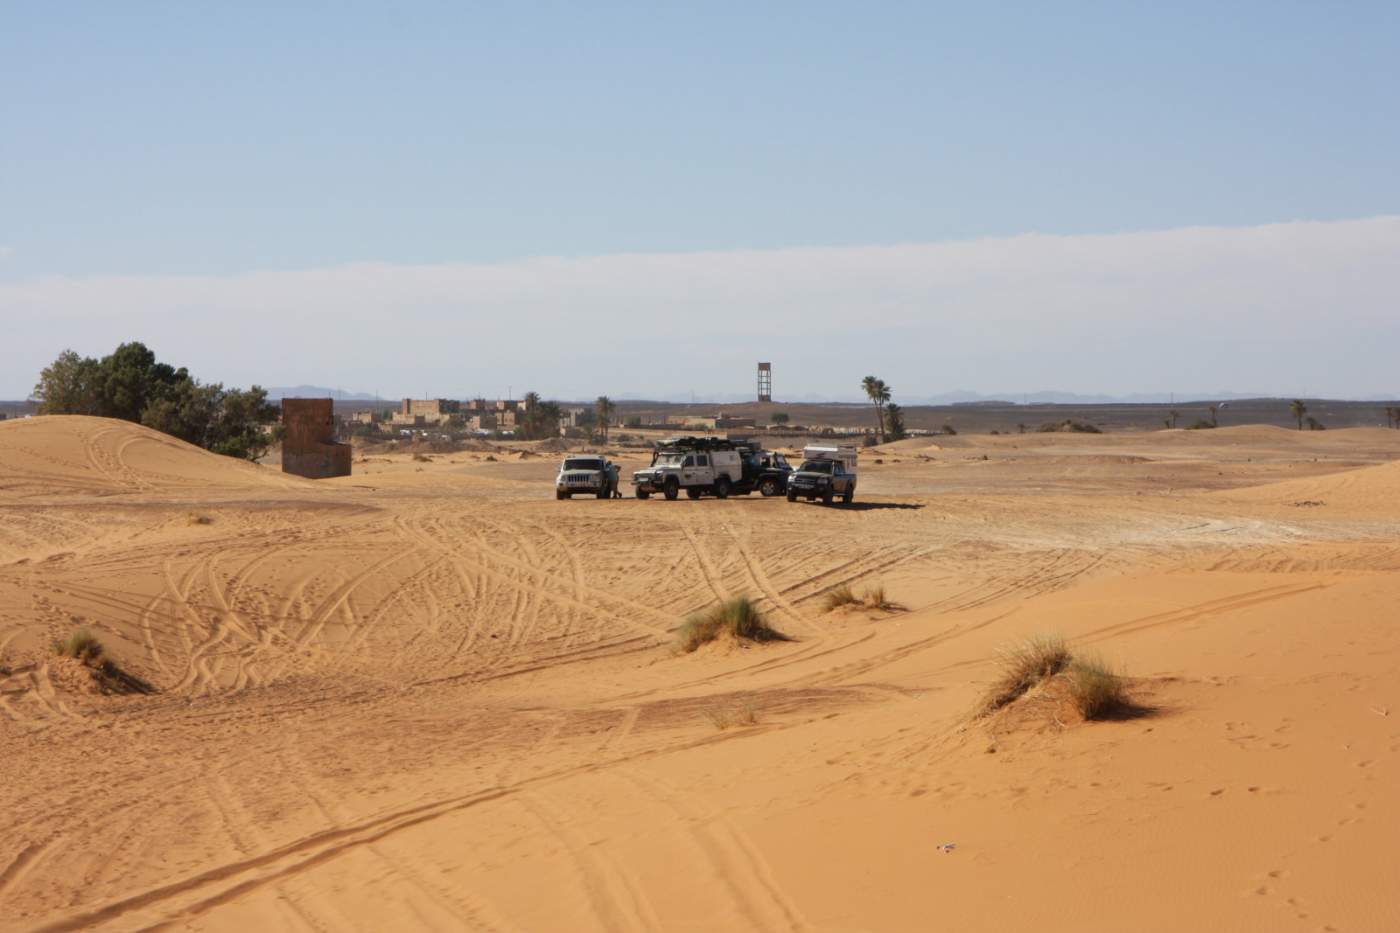 4x4 Geländewagengruppe vor der Oasenstadt Merzouga in den Dünen des Wüstenstreifens Erg Chebbi